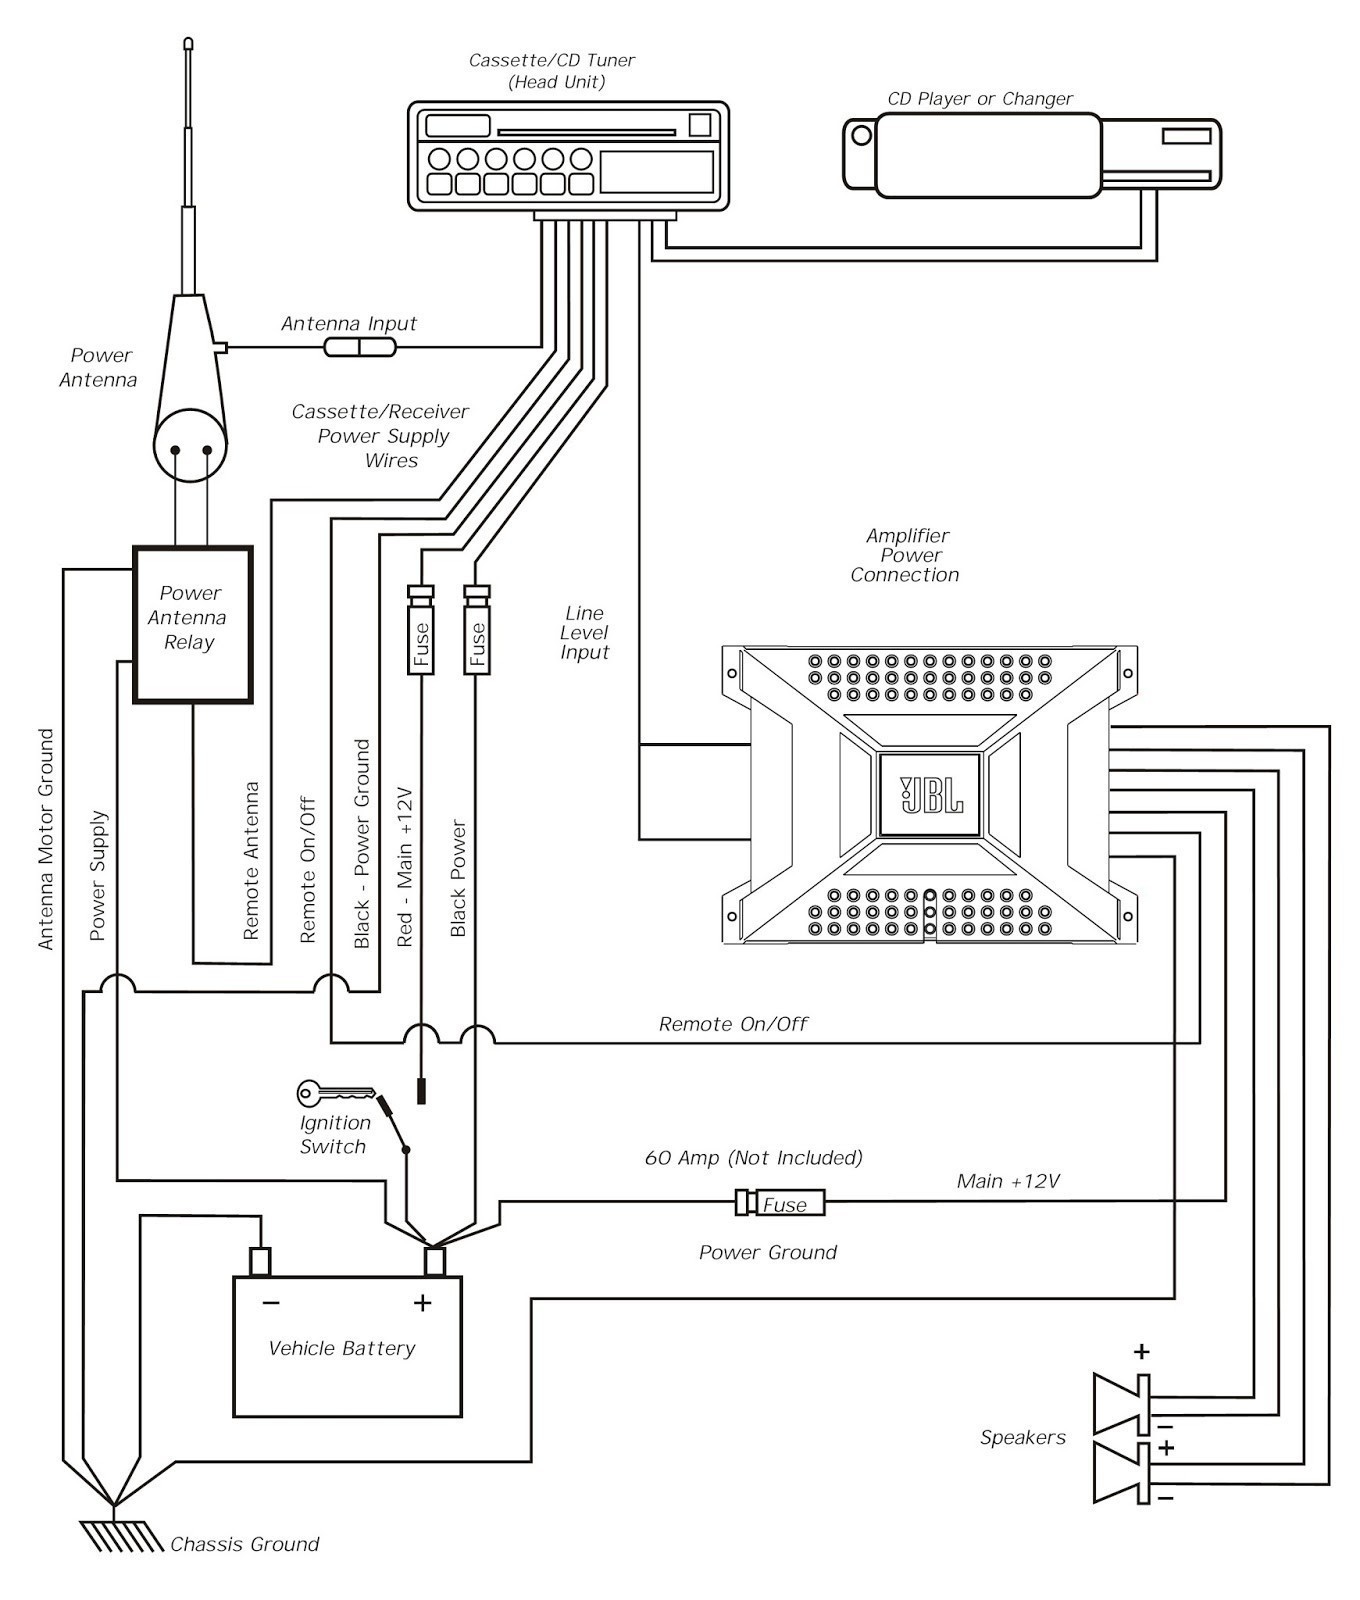 Wiring Diagram For 4 Channel Car Amplifier Fresh Kicker Amplifier